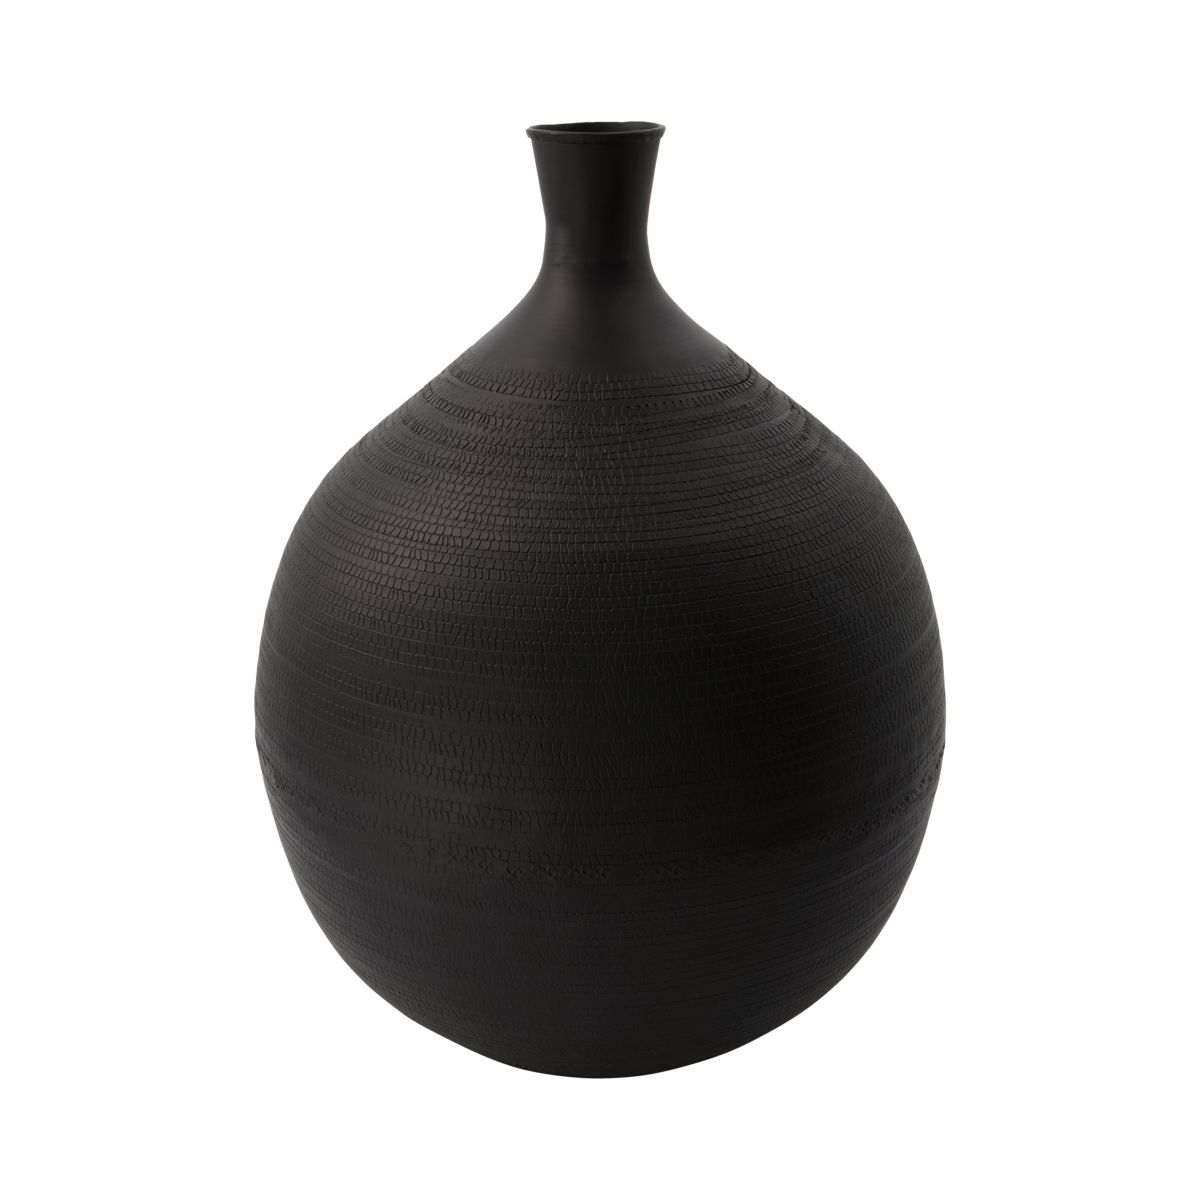 House Doctor Bottle Vase in Black Aluminium